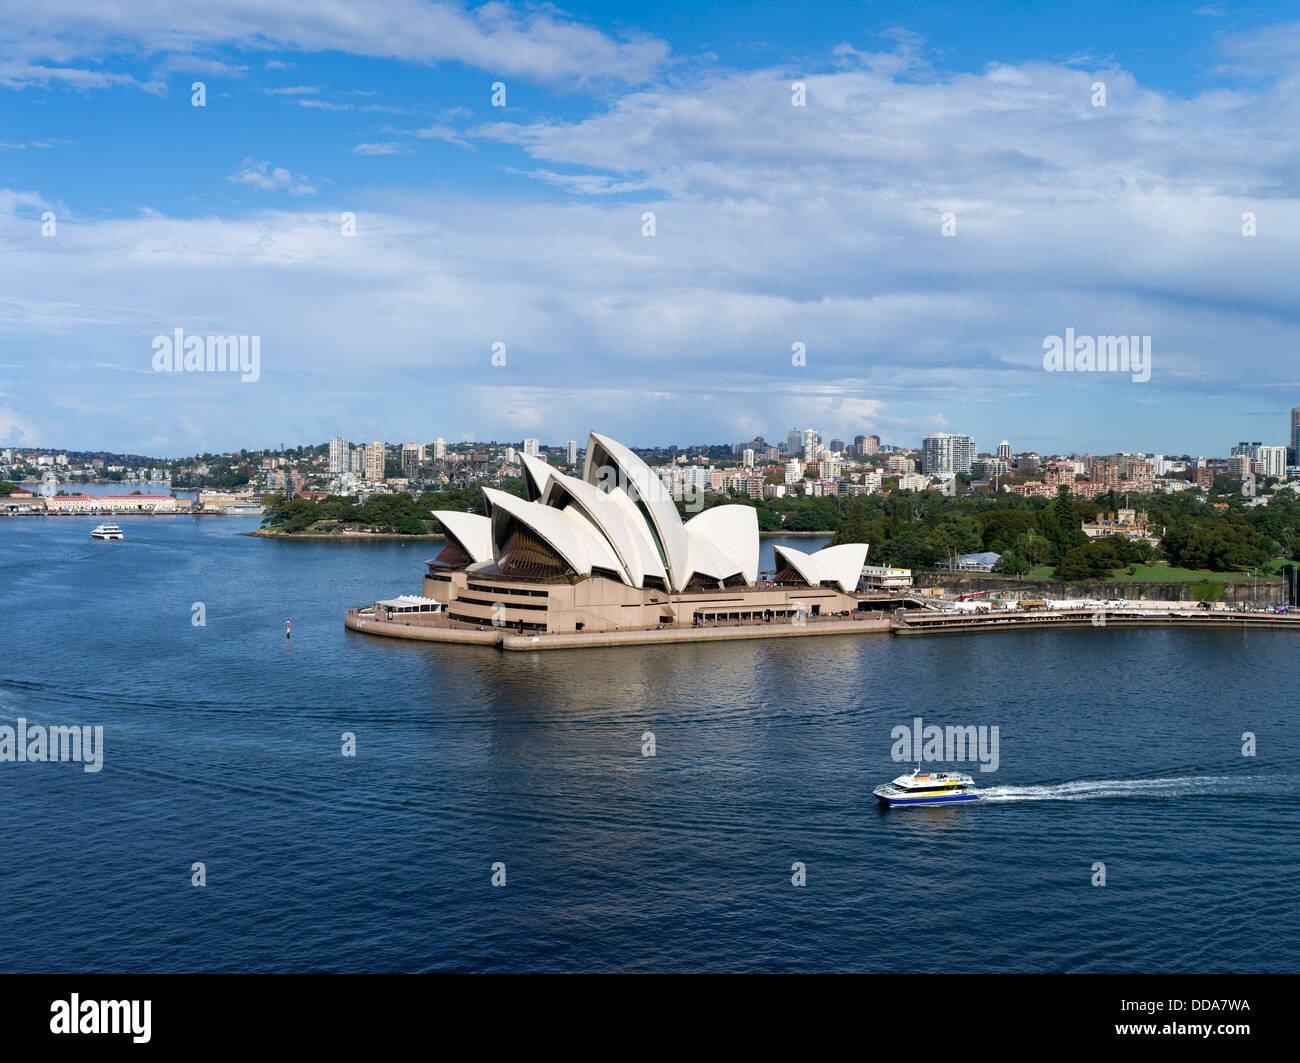 dh Sydney Harbour SYDNEY AUSTRALIE Manly seacat Fast Ferry Catamaran Ferry Sydney Opera House bateau port aérien Banque D'Images